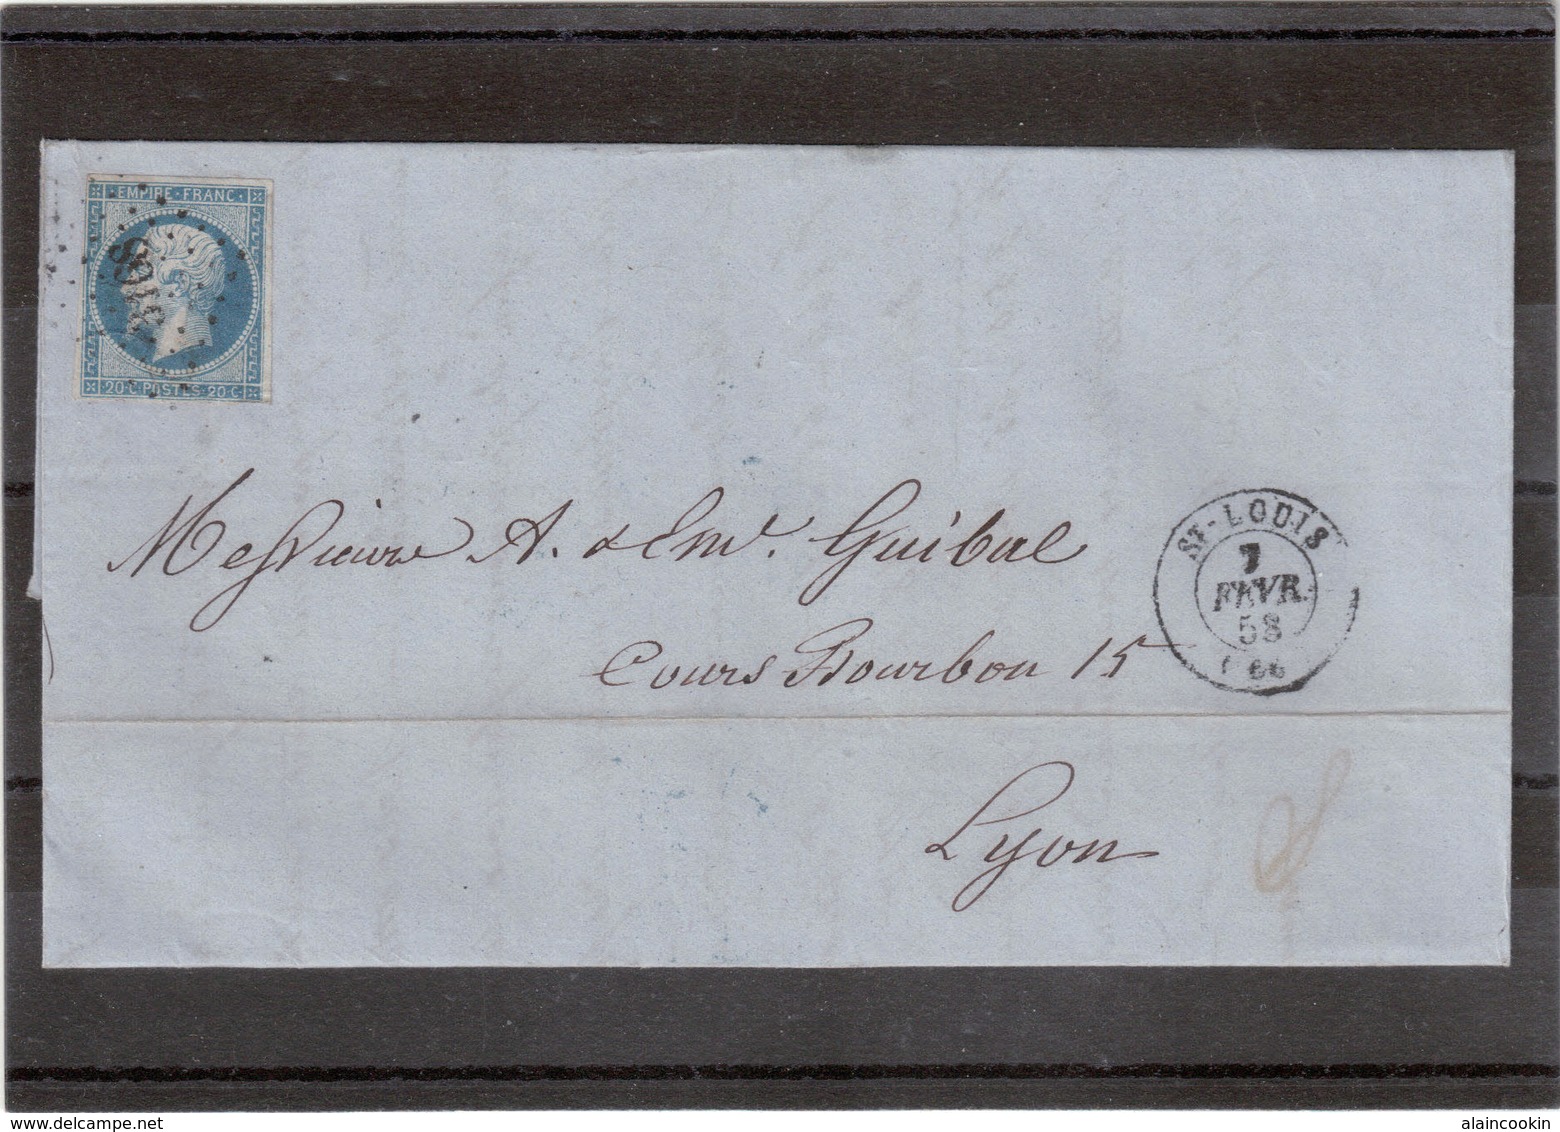 CP69 - Lettre Avec Yvert 14 Oblitéré " Petits Chiffres " 3168 De St Louis Du 7 FEVR 58 Pour Lyon. - 1862 Napoleone III